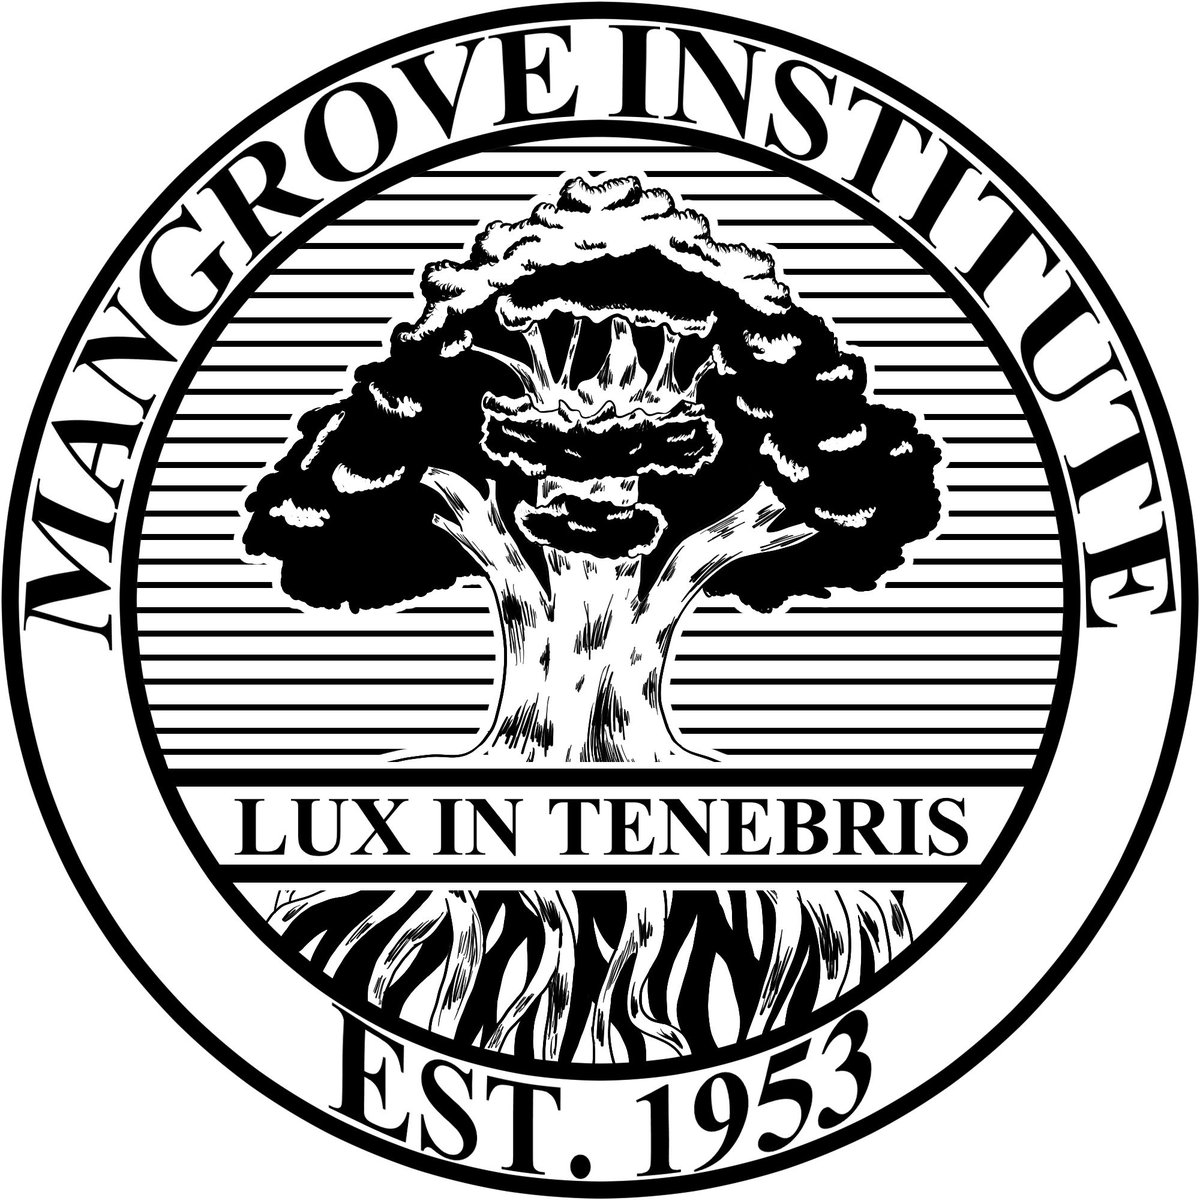 The Mangrove Institute